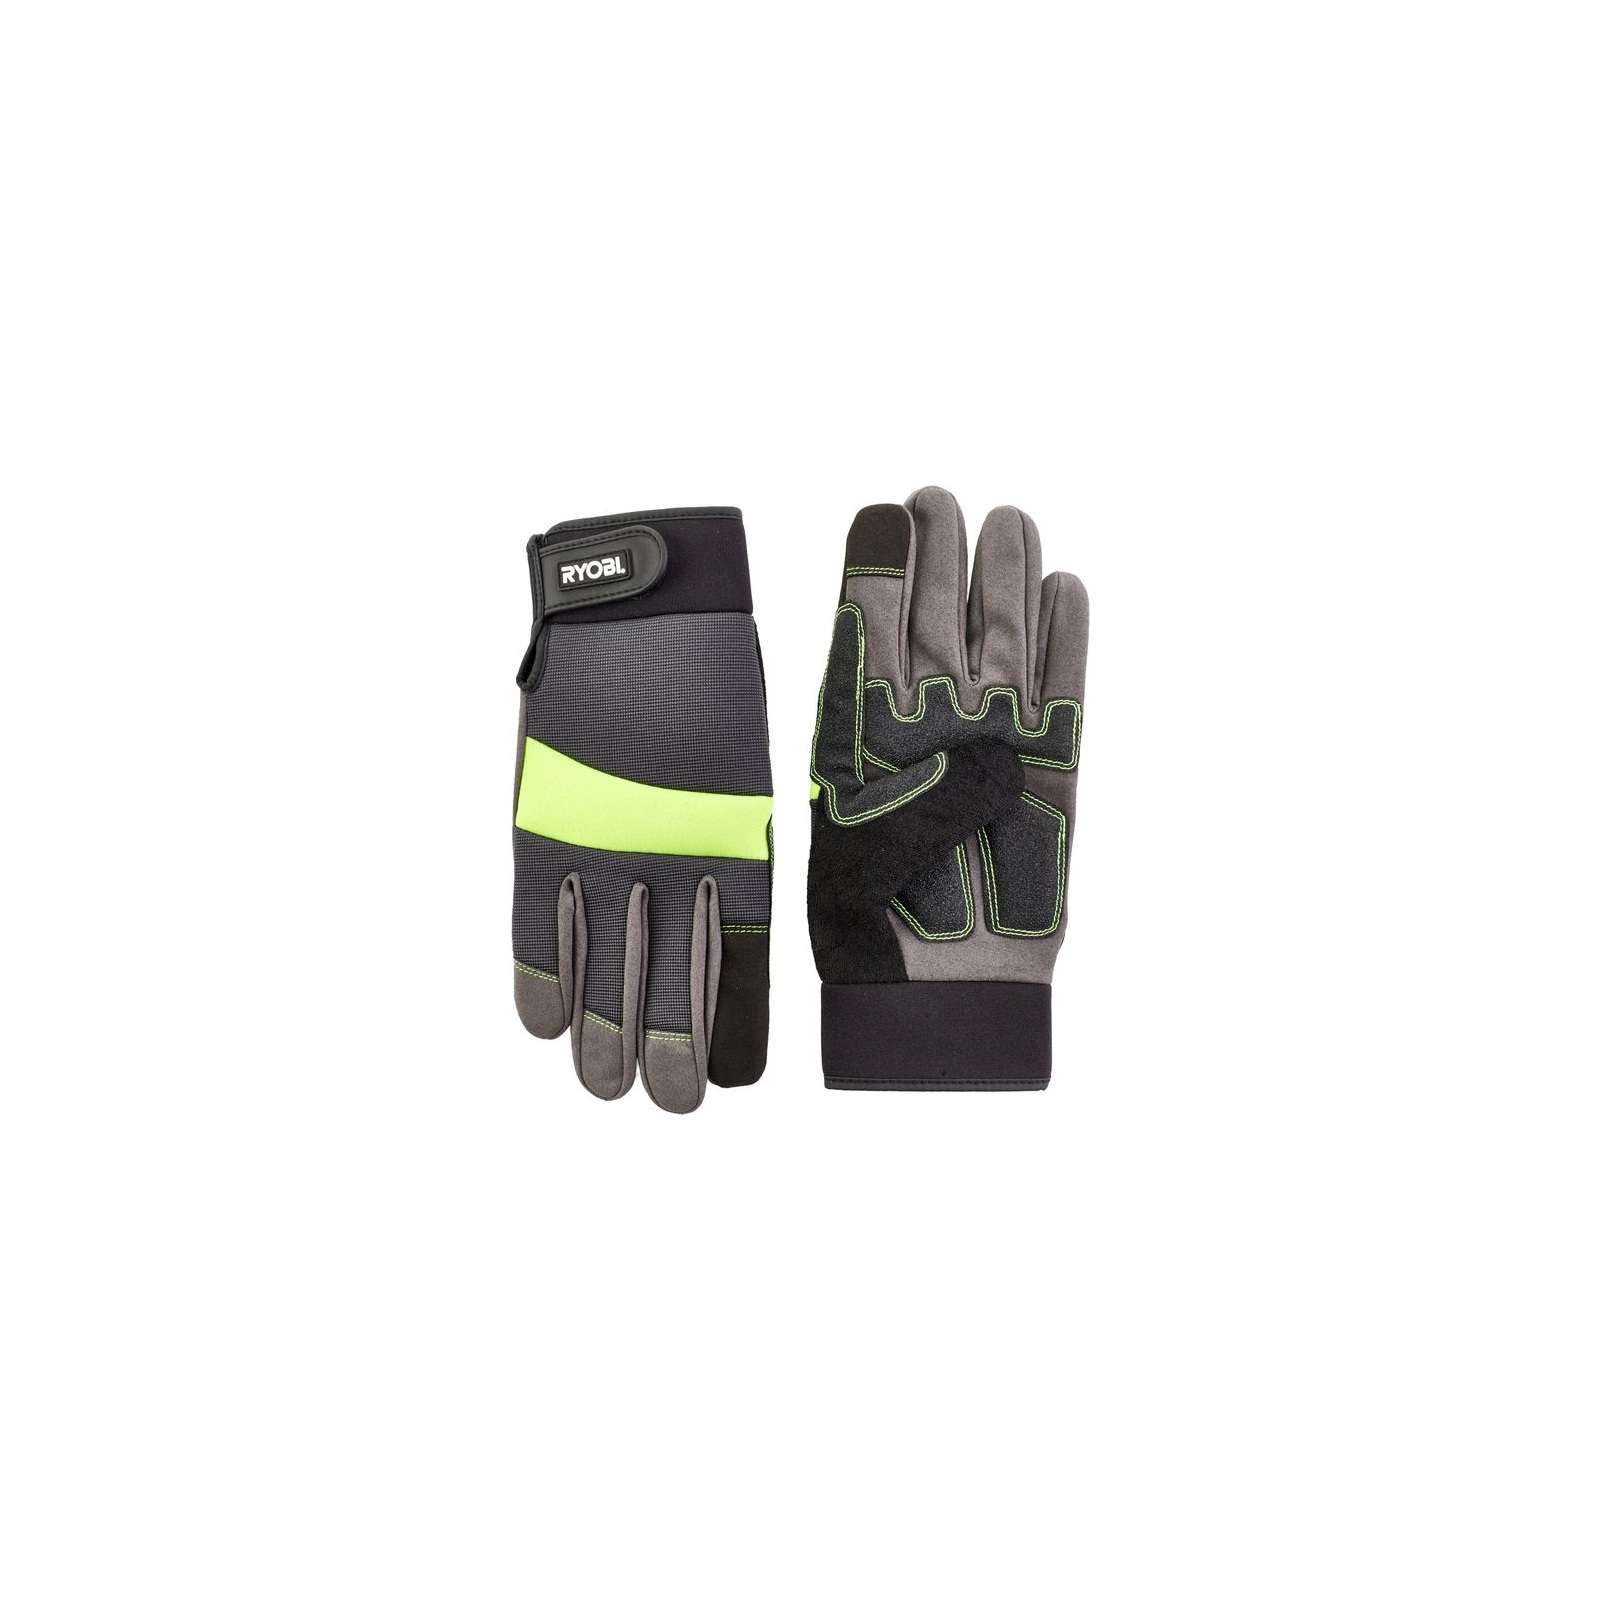 Захисні рукавиці Ryobi RAC811XL, вологозахист, р. XL (5132003439)